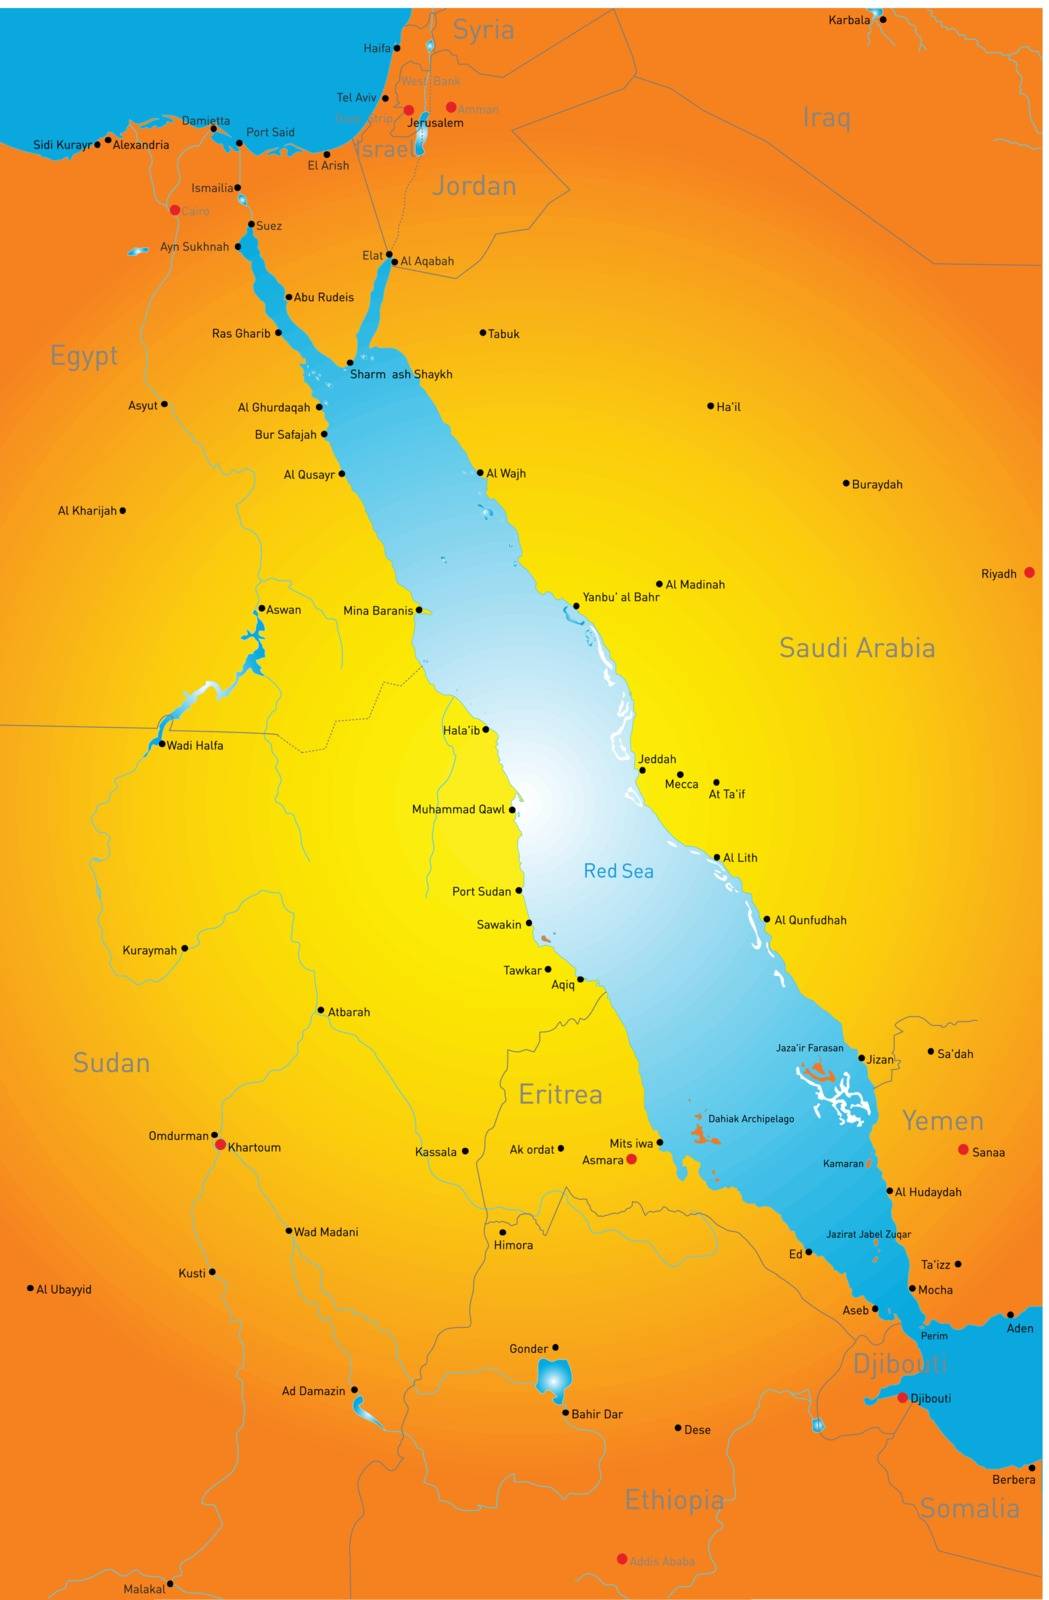 Red Sea region by rusak